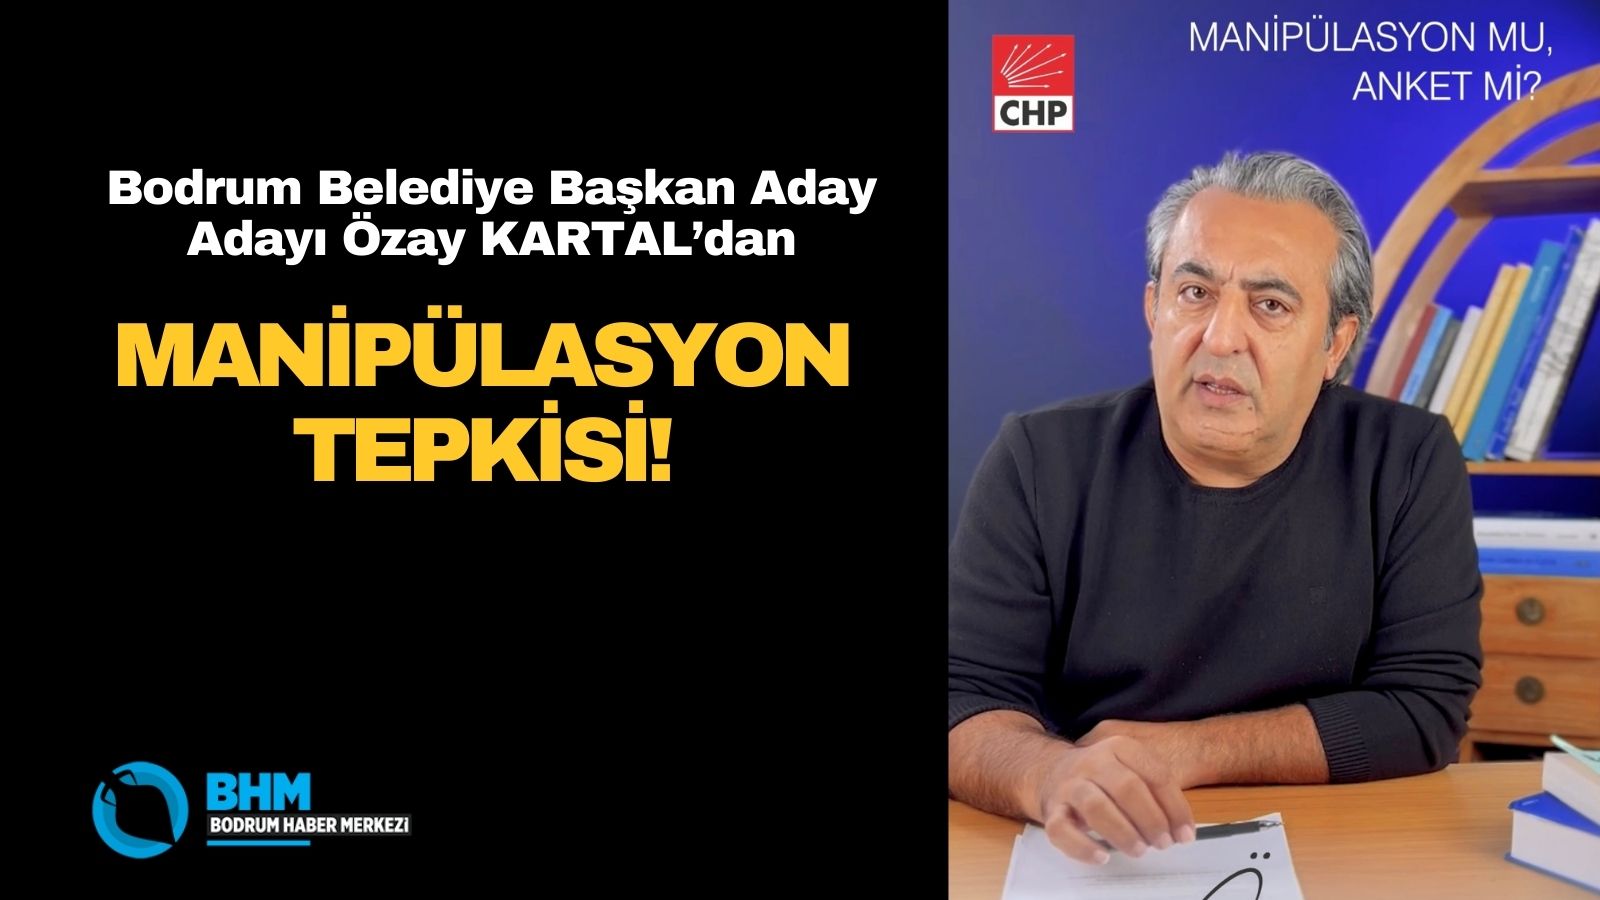 CHP Bodrum A. Adayı Özay Kartal’dan ‘Manipülasyon’ tepkisi!